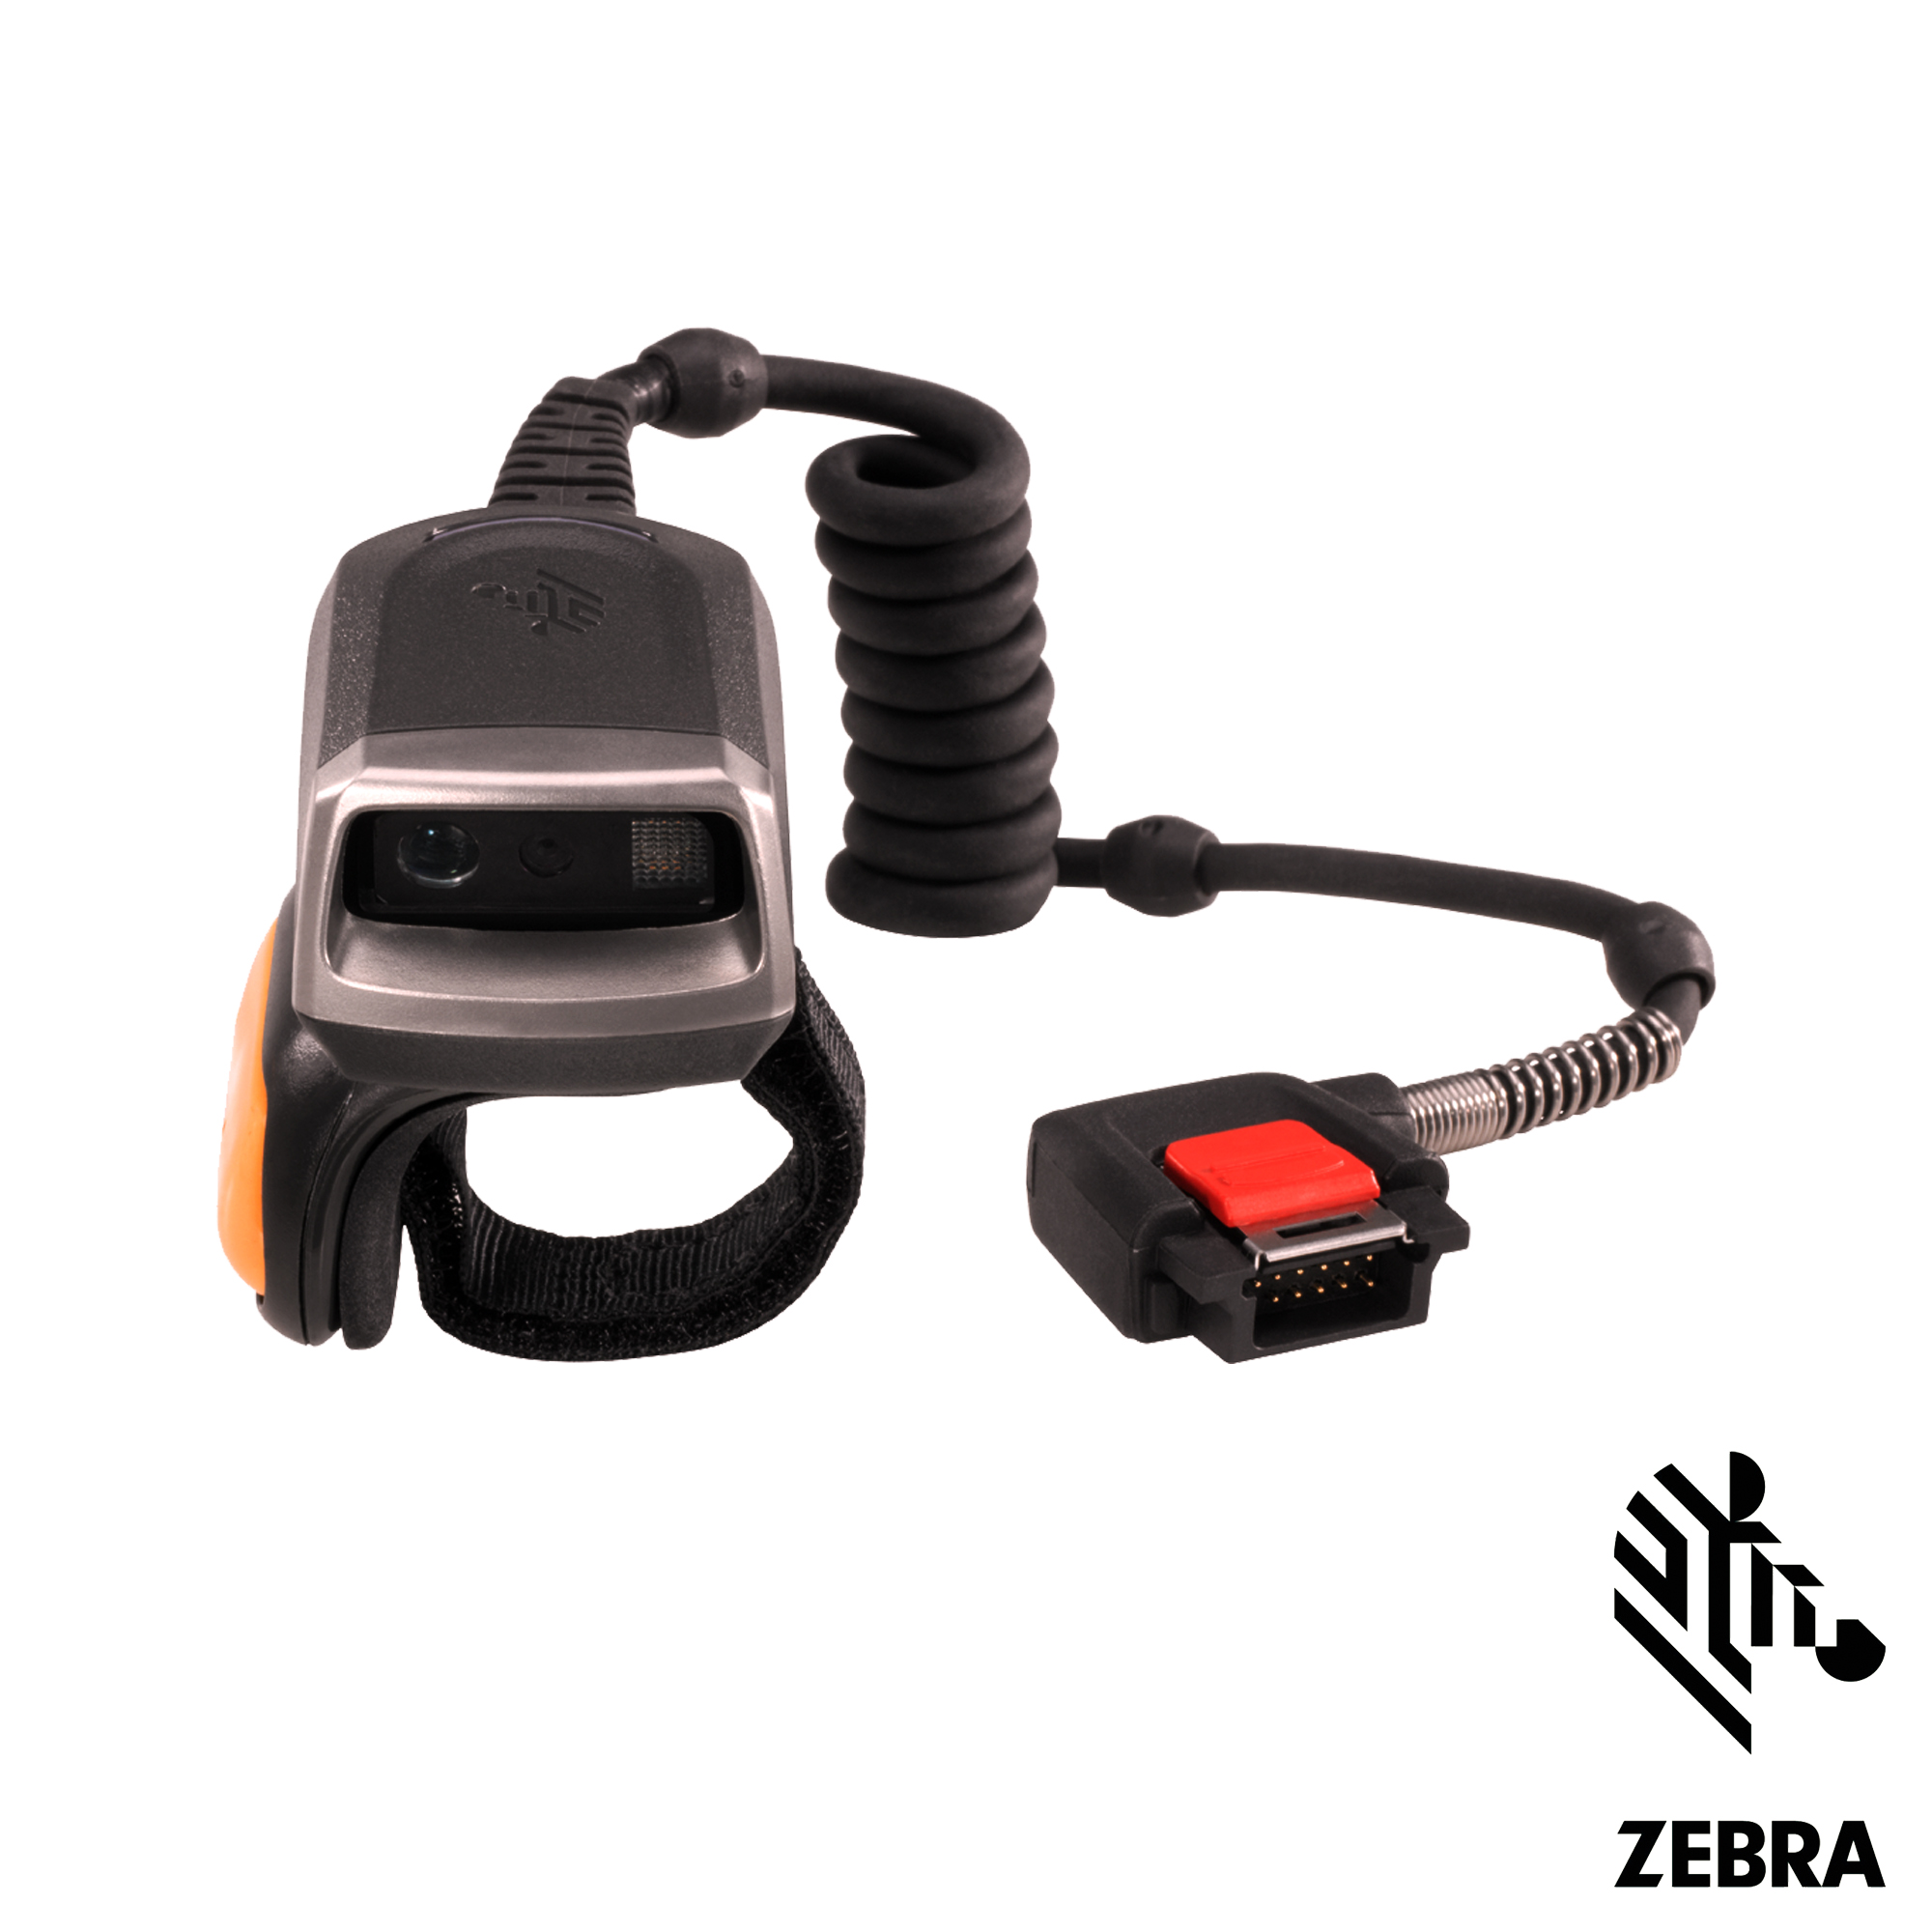 Штрих сканер зебра. Сканер-кольцо Zebra rs4000. Сканер Zebra RS 5600. ТСД сканер Zebra. Сканер Zebra mx101-sr7000ww.